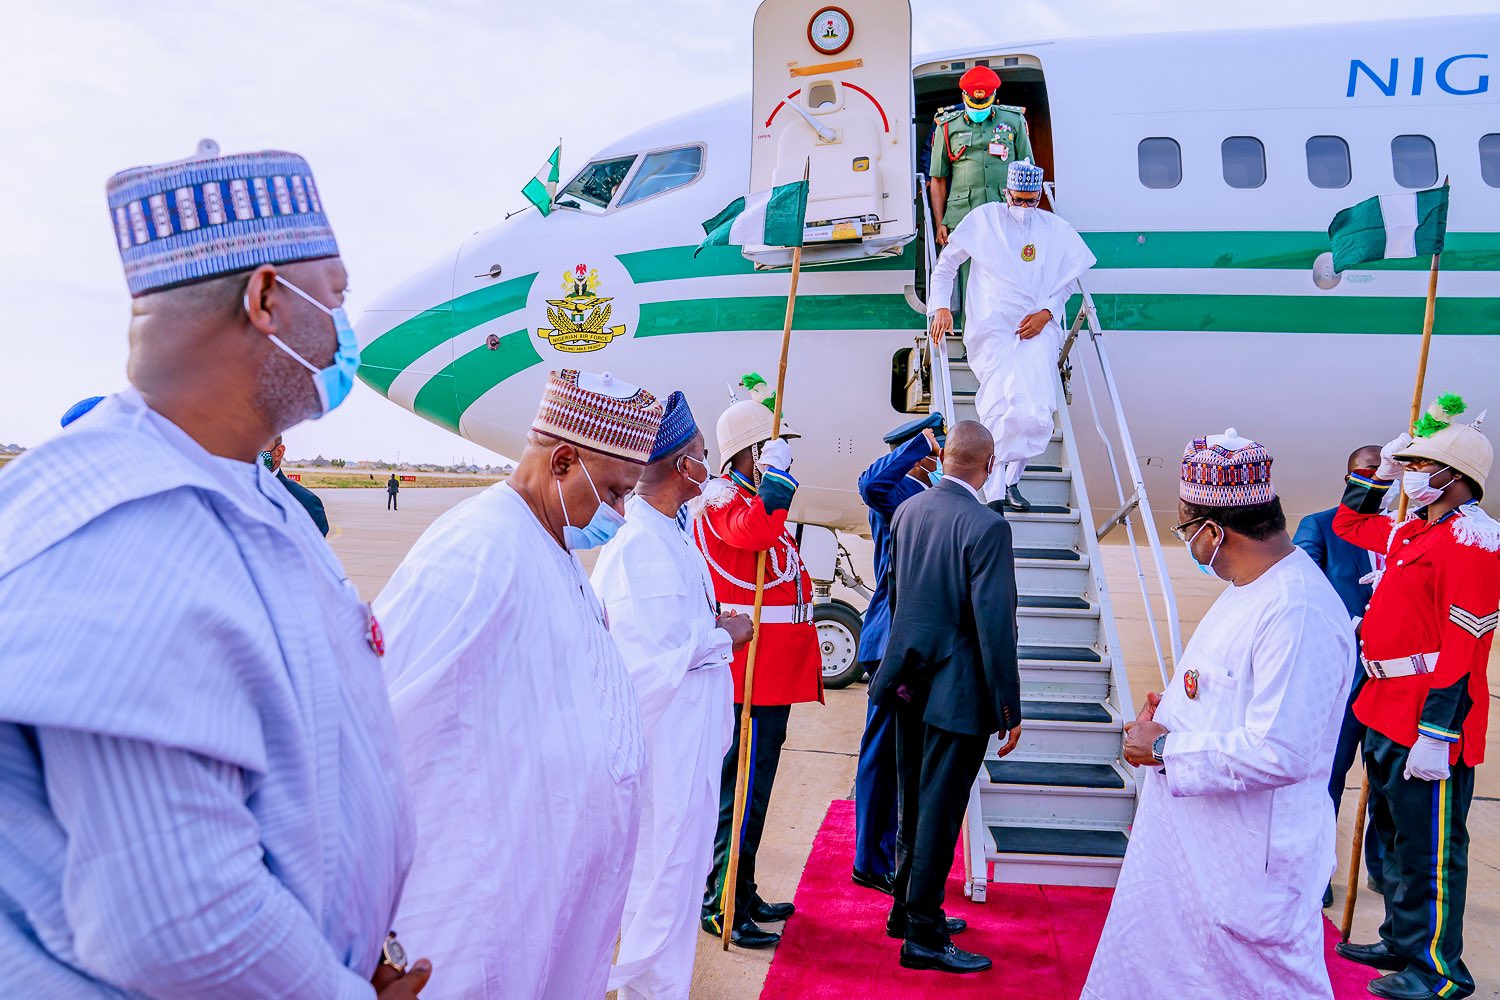 Buhari arrives Daura